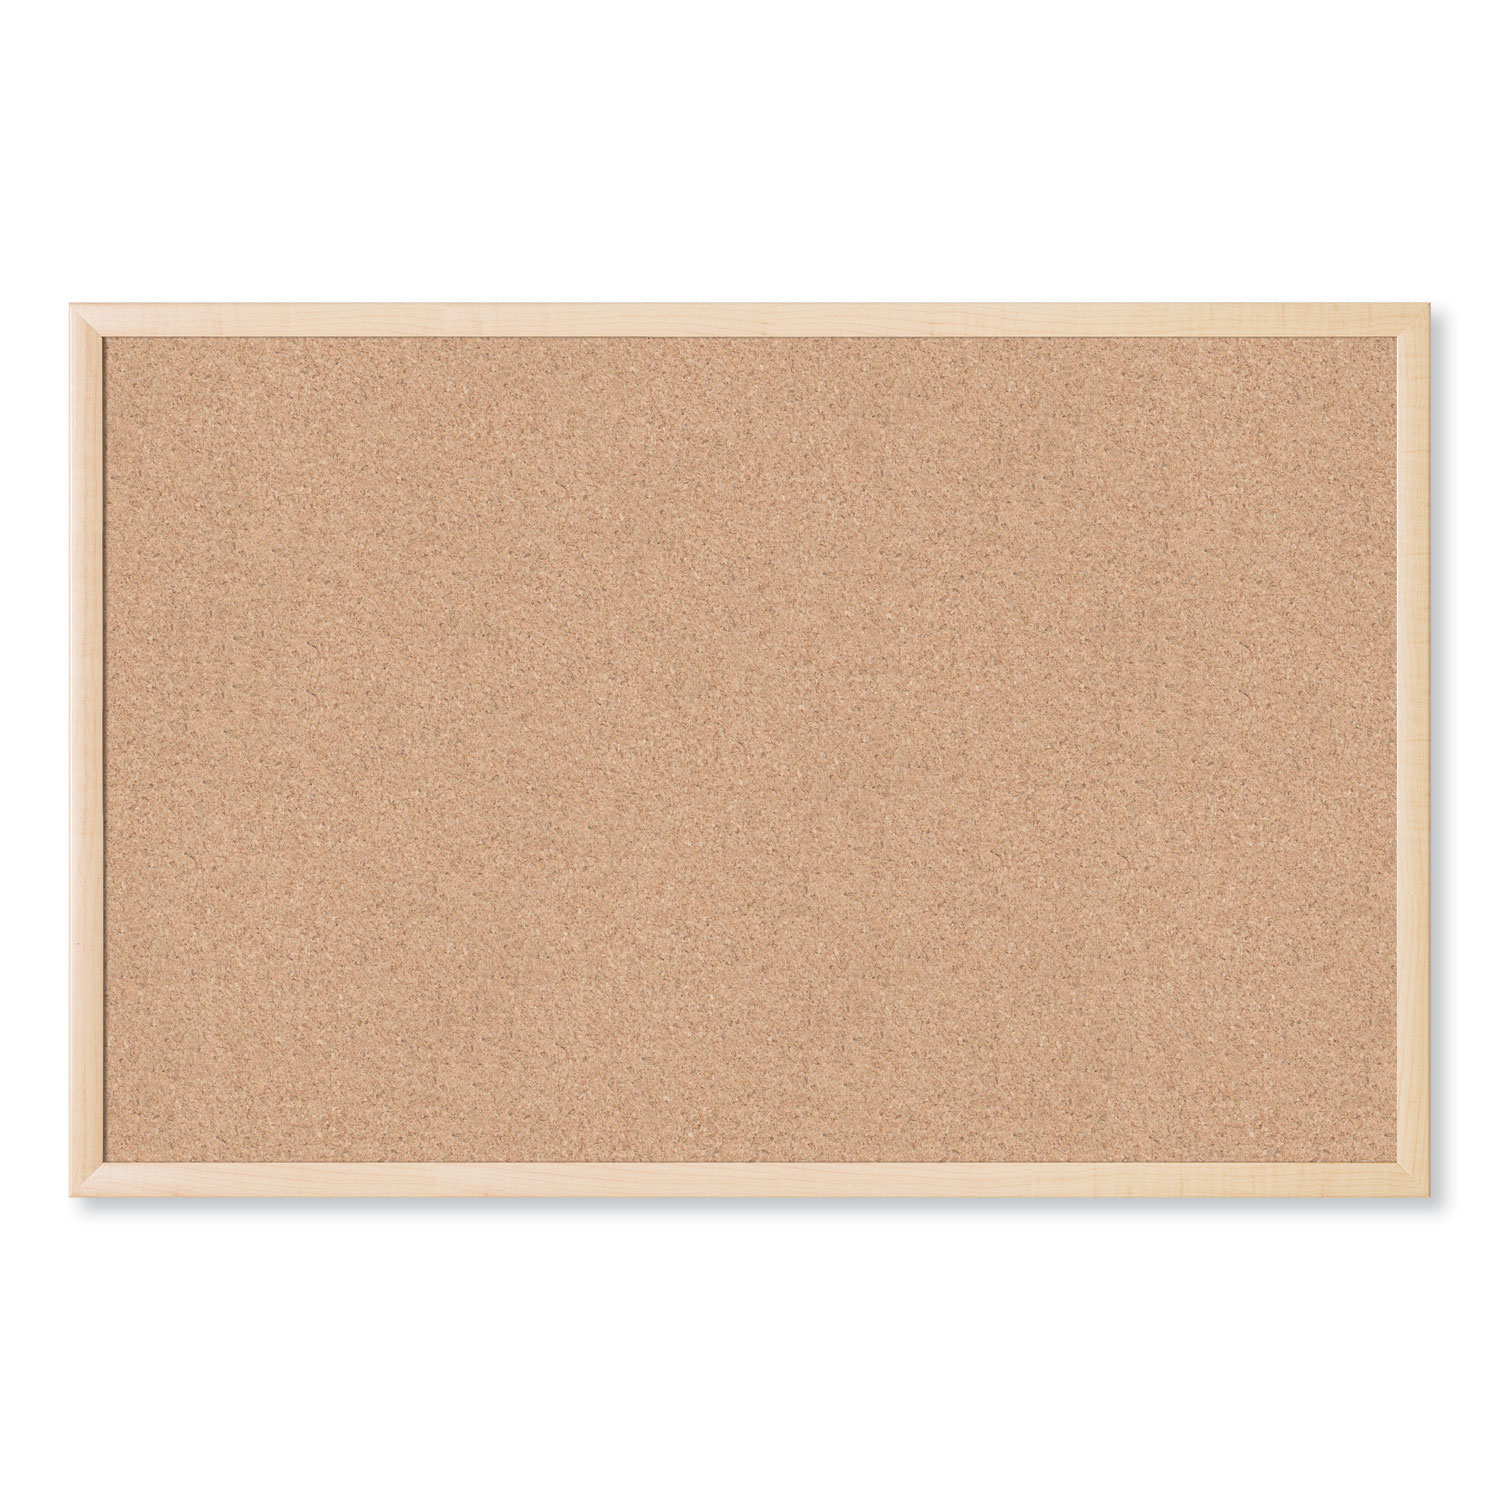 Vuzvuv 35''x 23'' Large Cork Board,6Pcs Dark Grey Cork Board Tiles